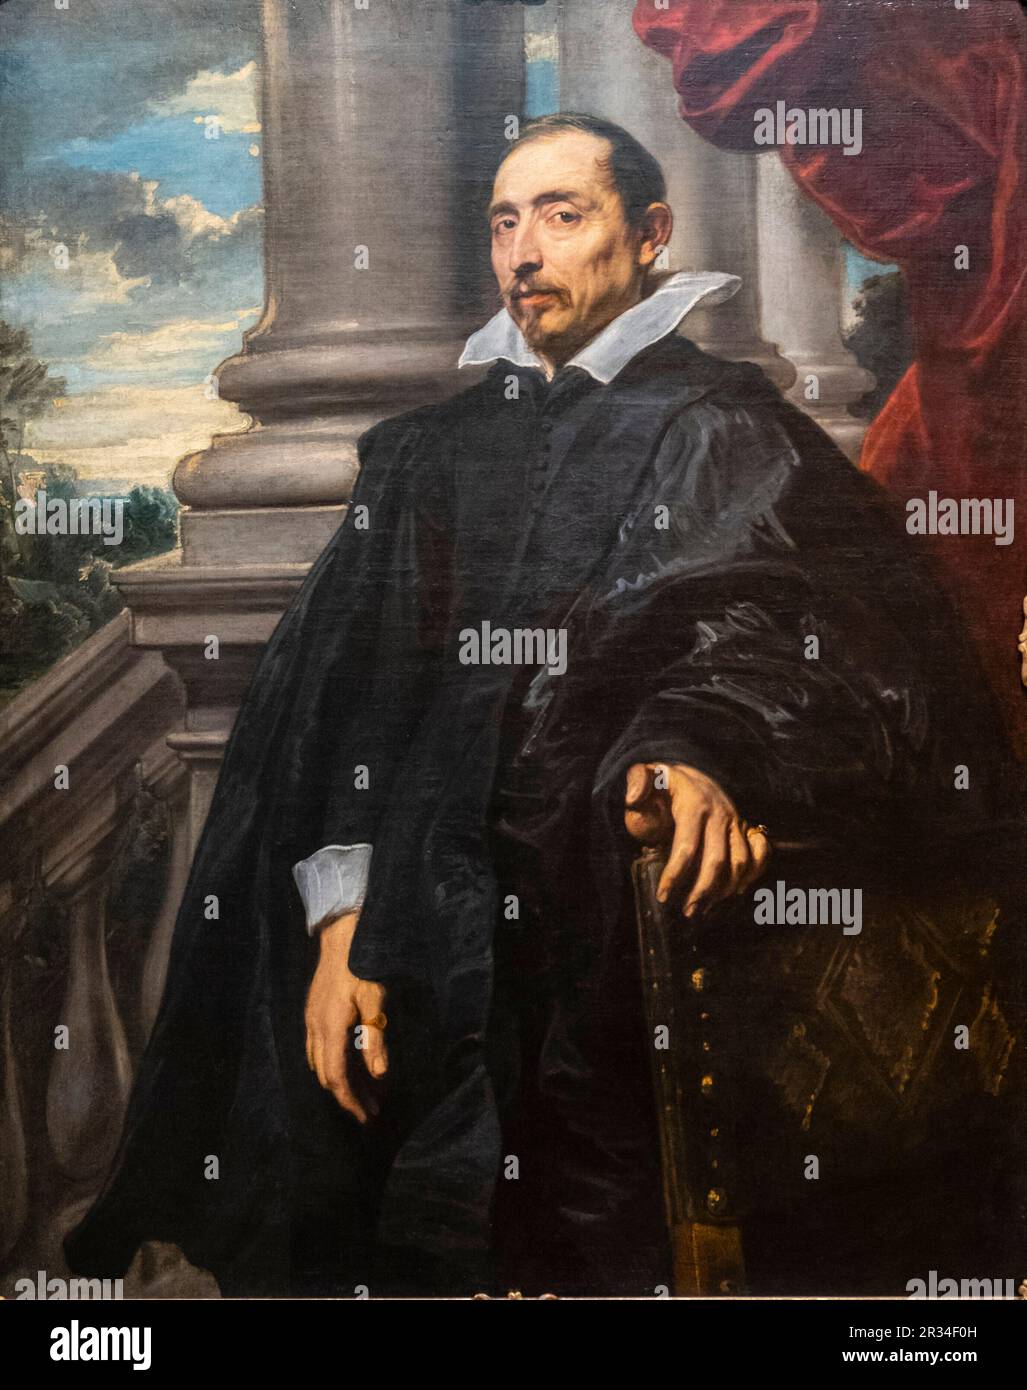 retrato de hombre, anton Van Dyck, Flandes, 1620-1621, Fundación Calouste Gulbenkian, («Fundação Calouste Gulbenkian»), Lisboa, Portugal. Stock Photo